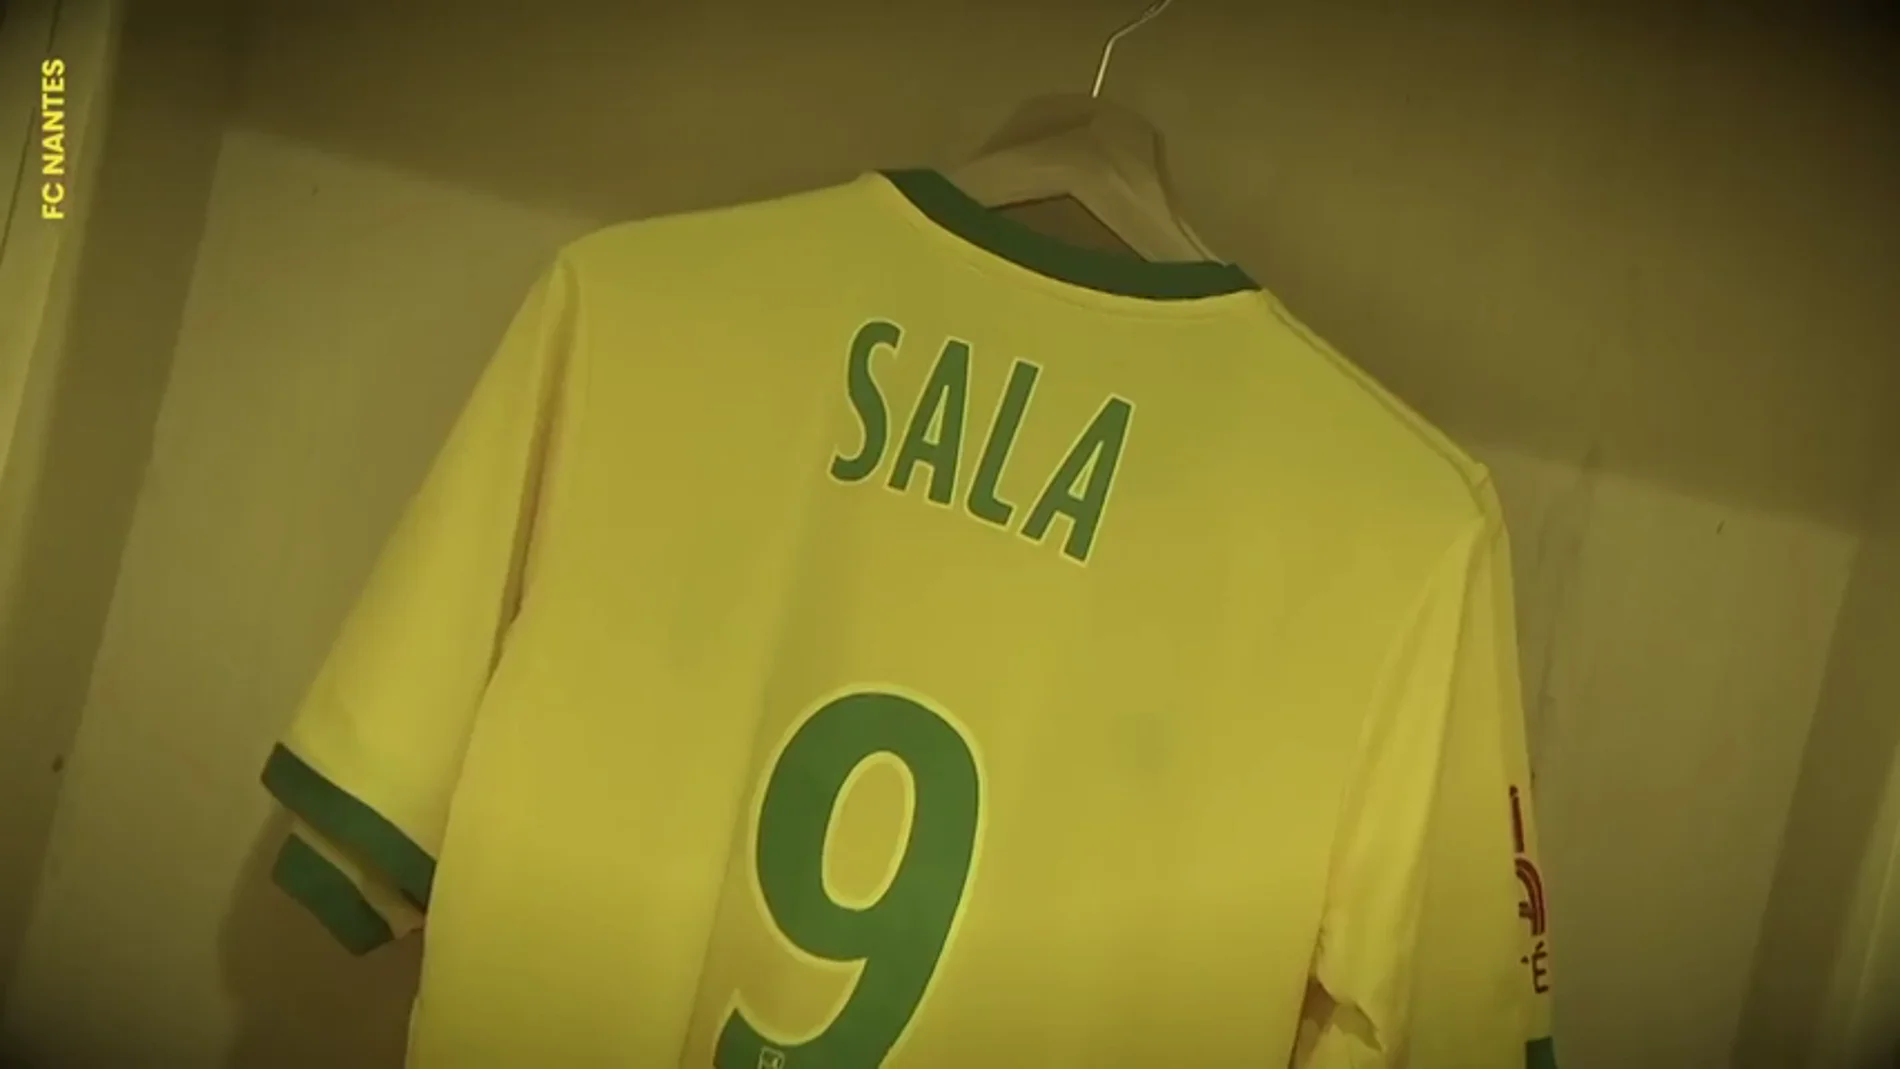 El emotivo vídeo del Nantes en homenaje a Emiliano Sala en redes sociales